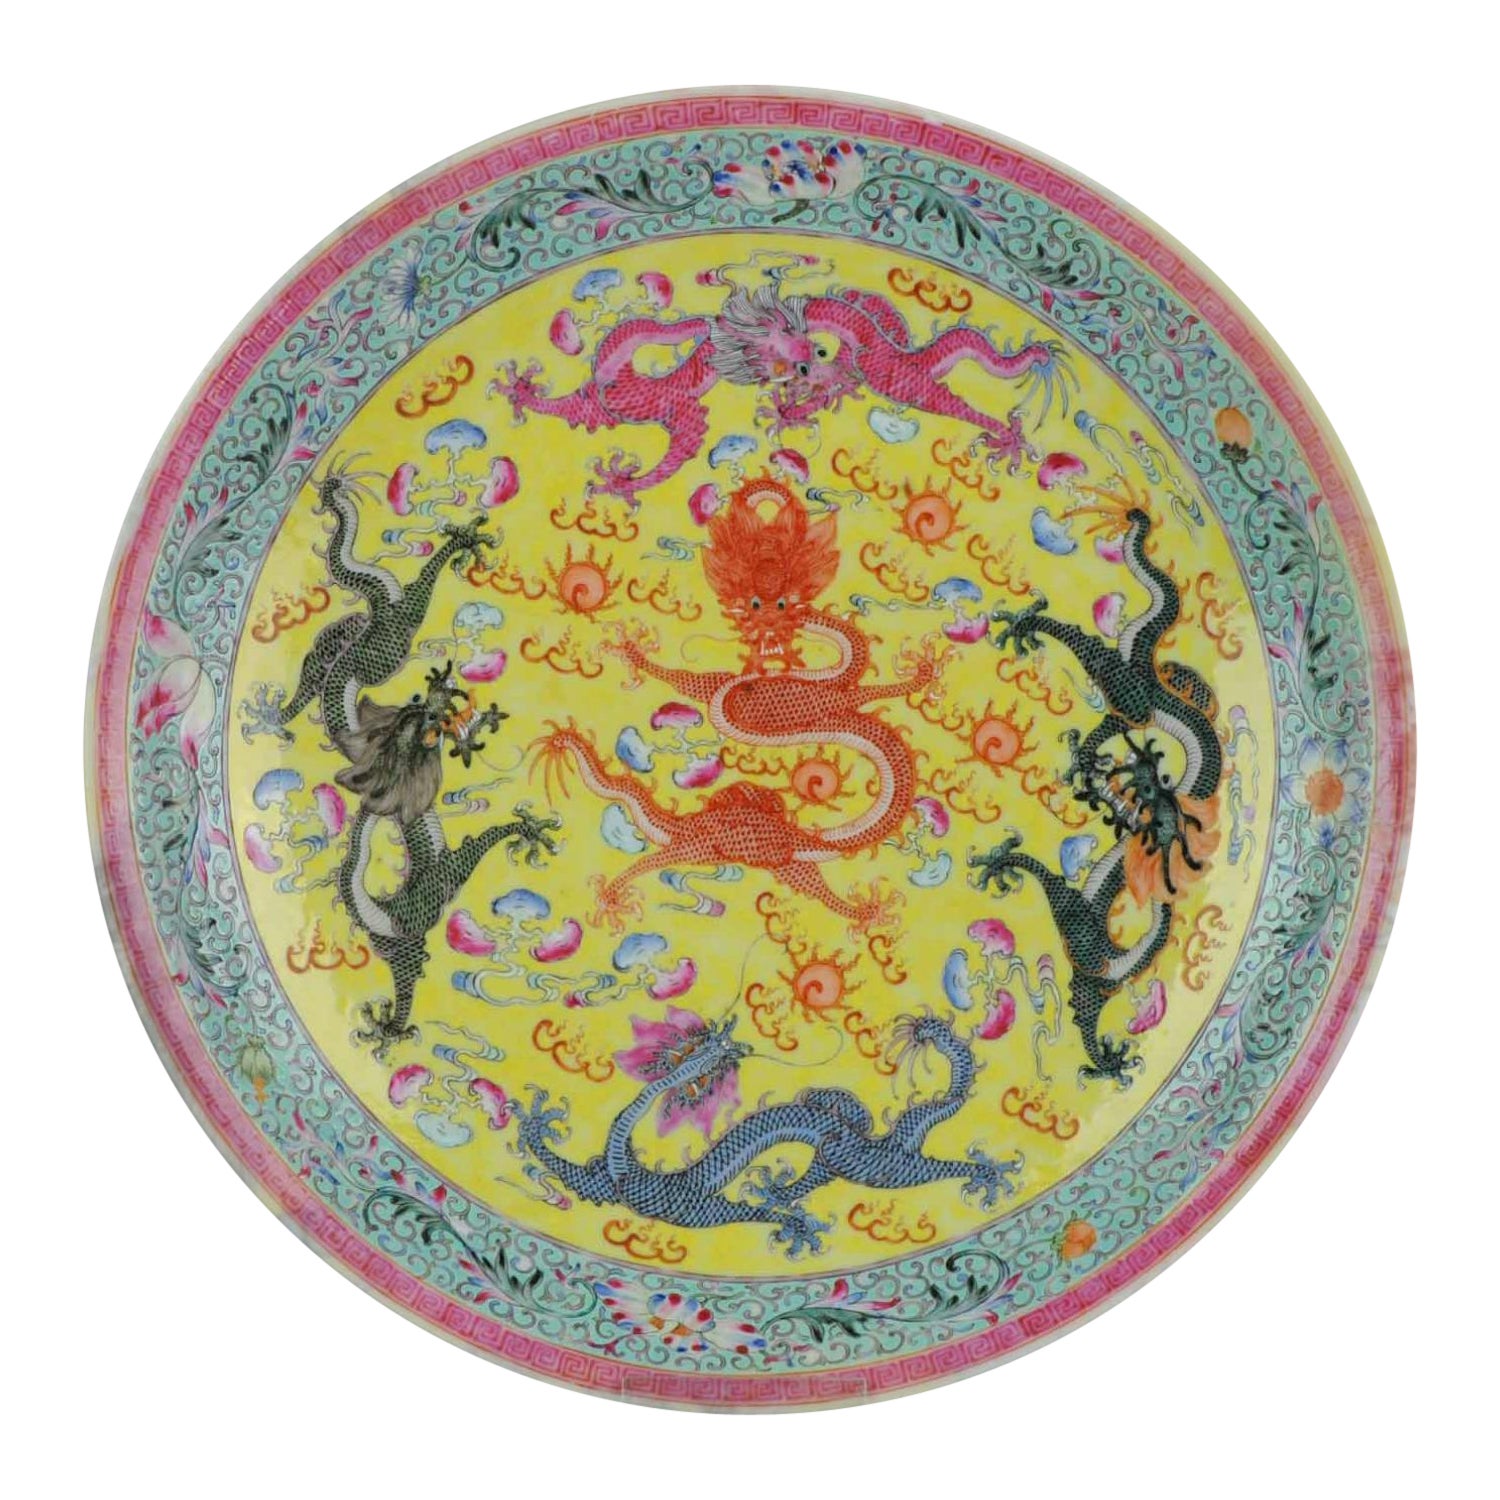 Assiette PROC en porcelaine chinoise marquée de dragons, 1950-1960